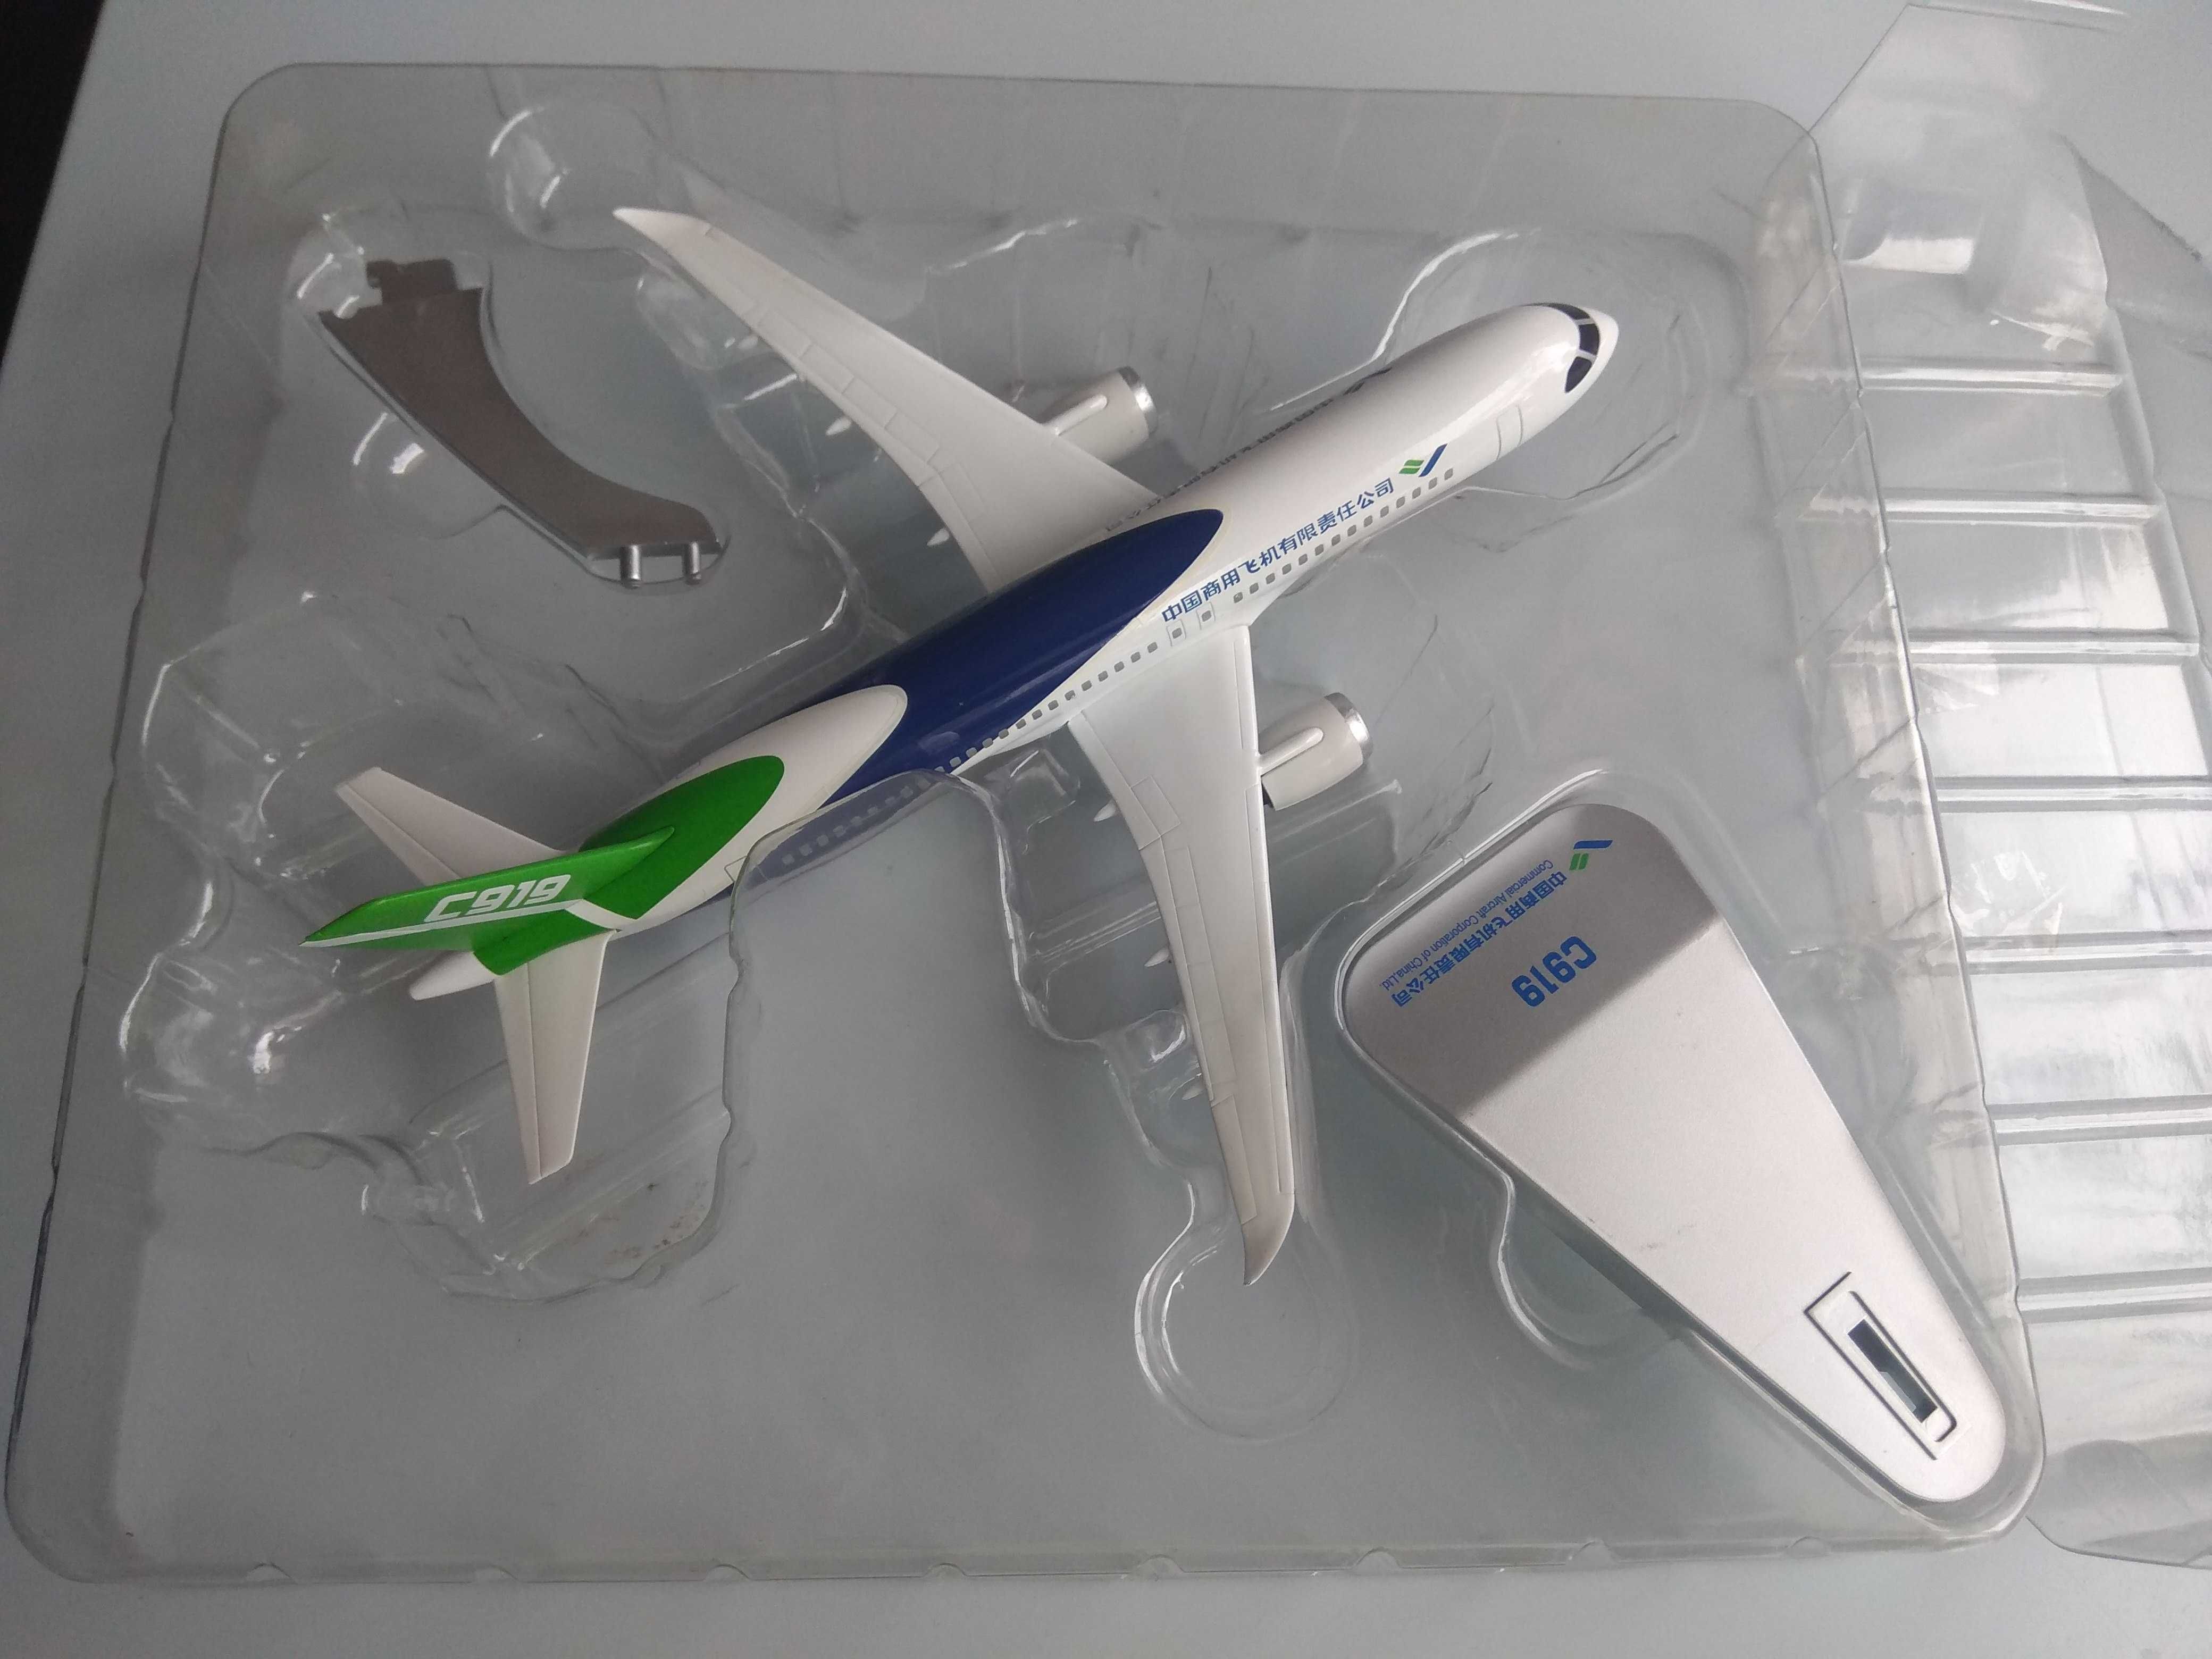 новые коллекционные модели пассажирских самолетов МА-700 и С919